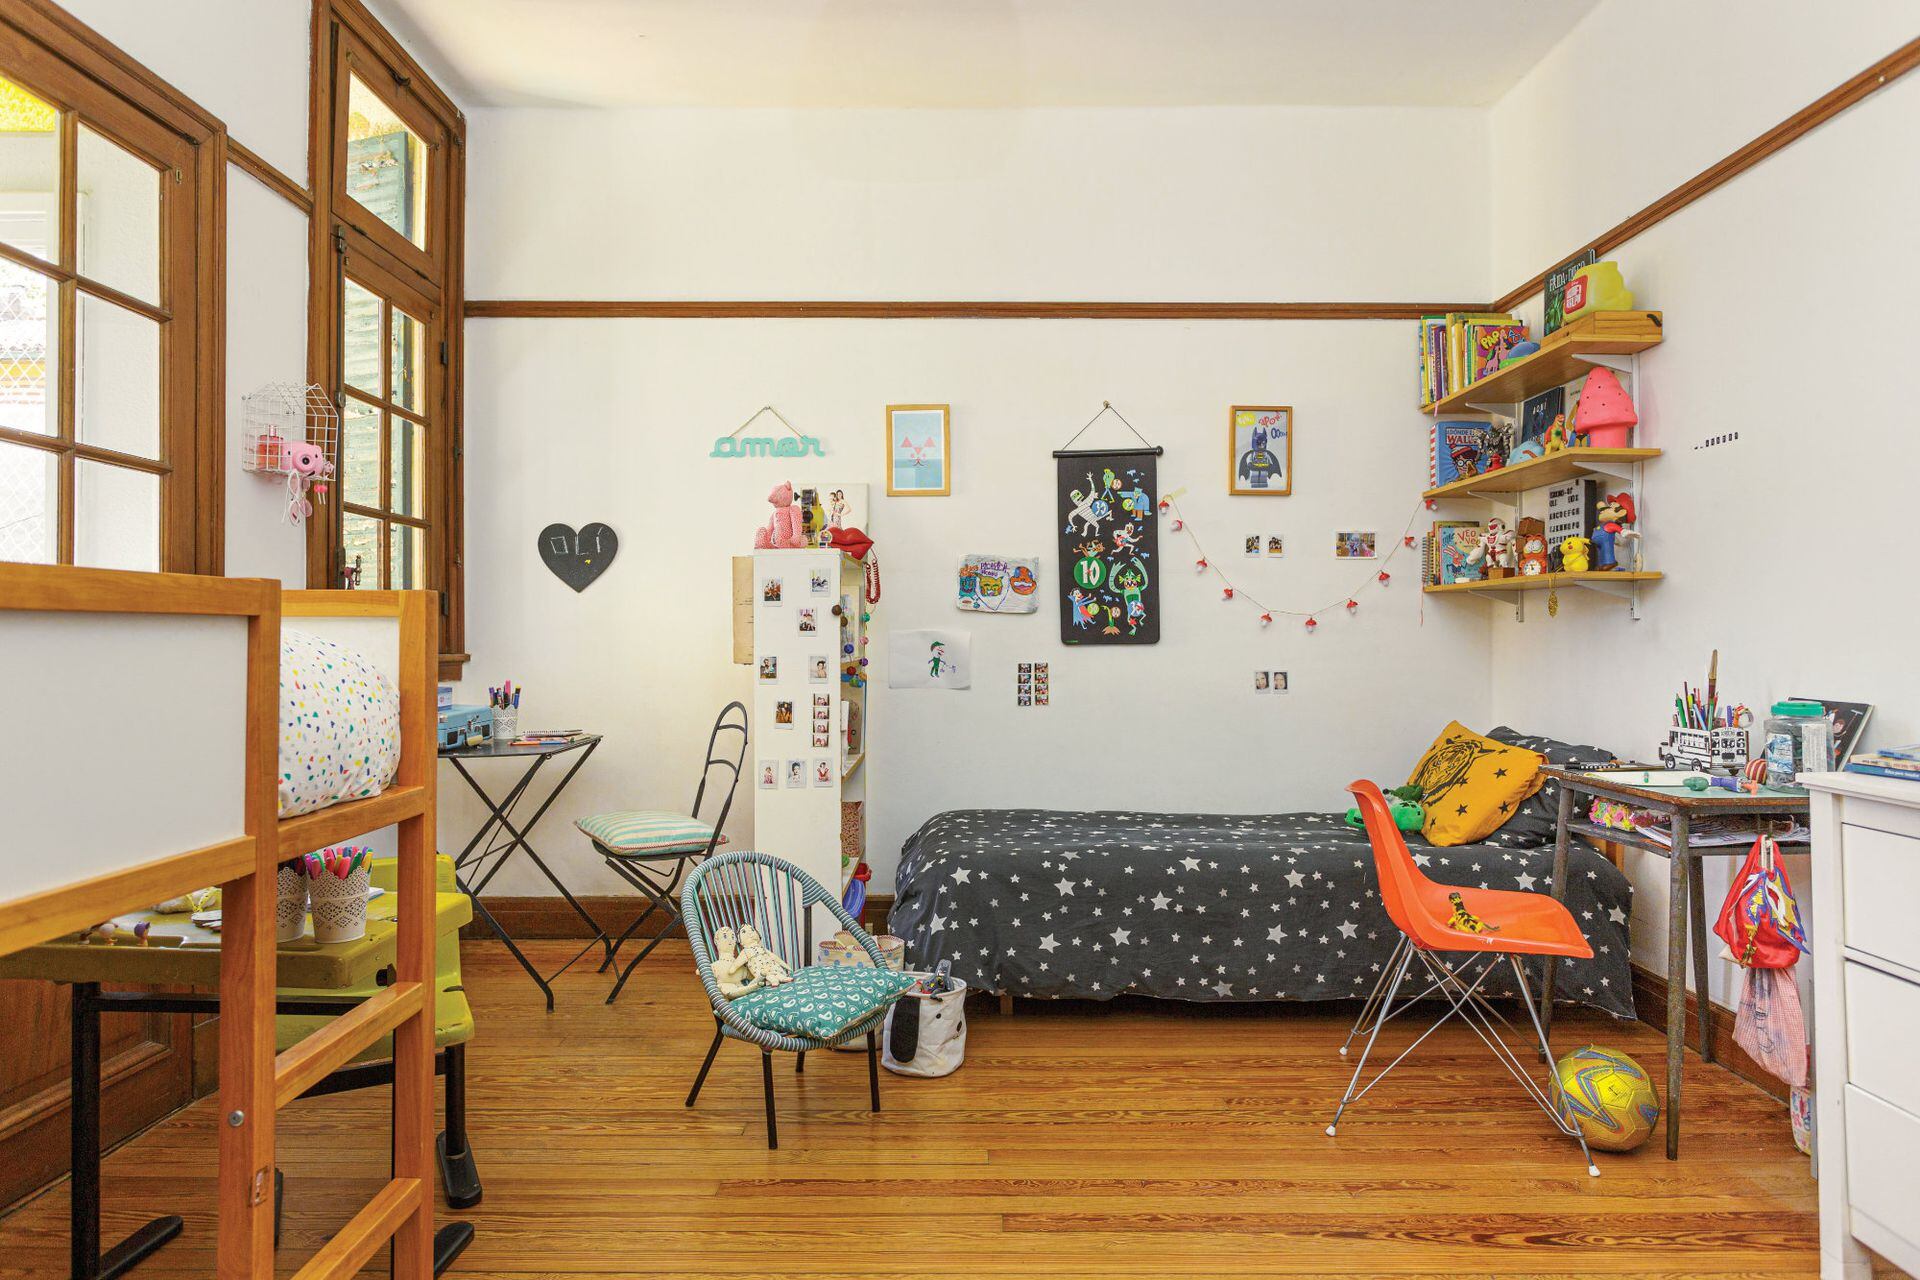 Espacios individuales bien definidos en el dormitorio de los tres niños de esta casa.